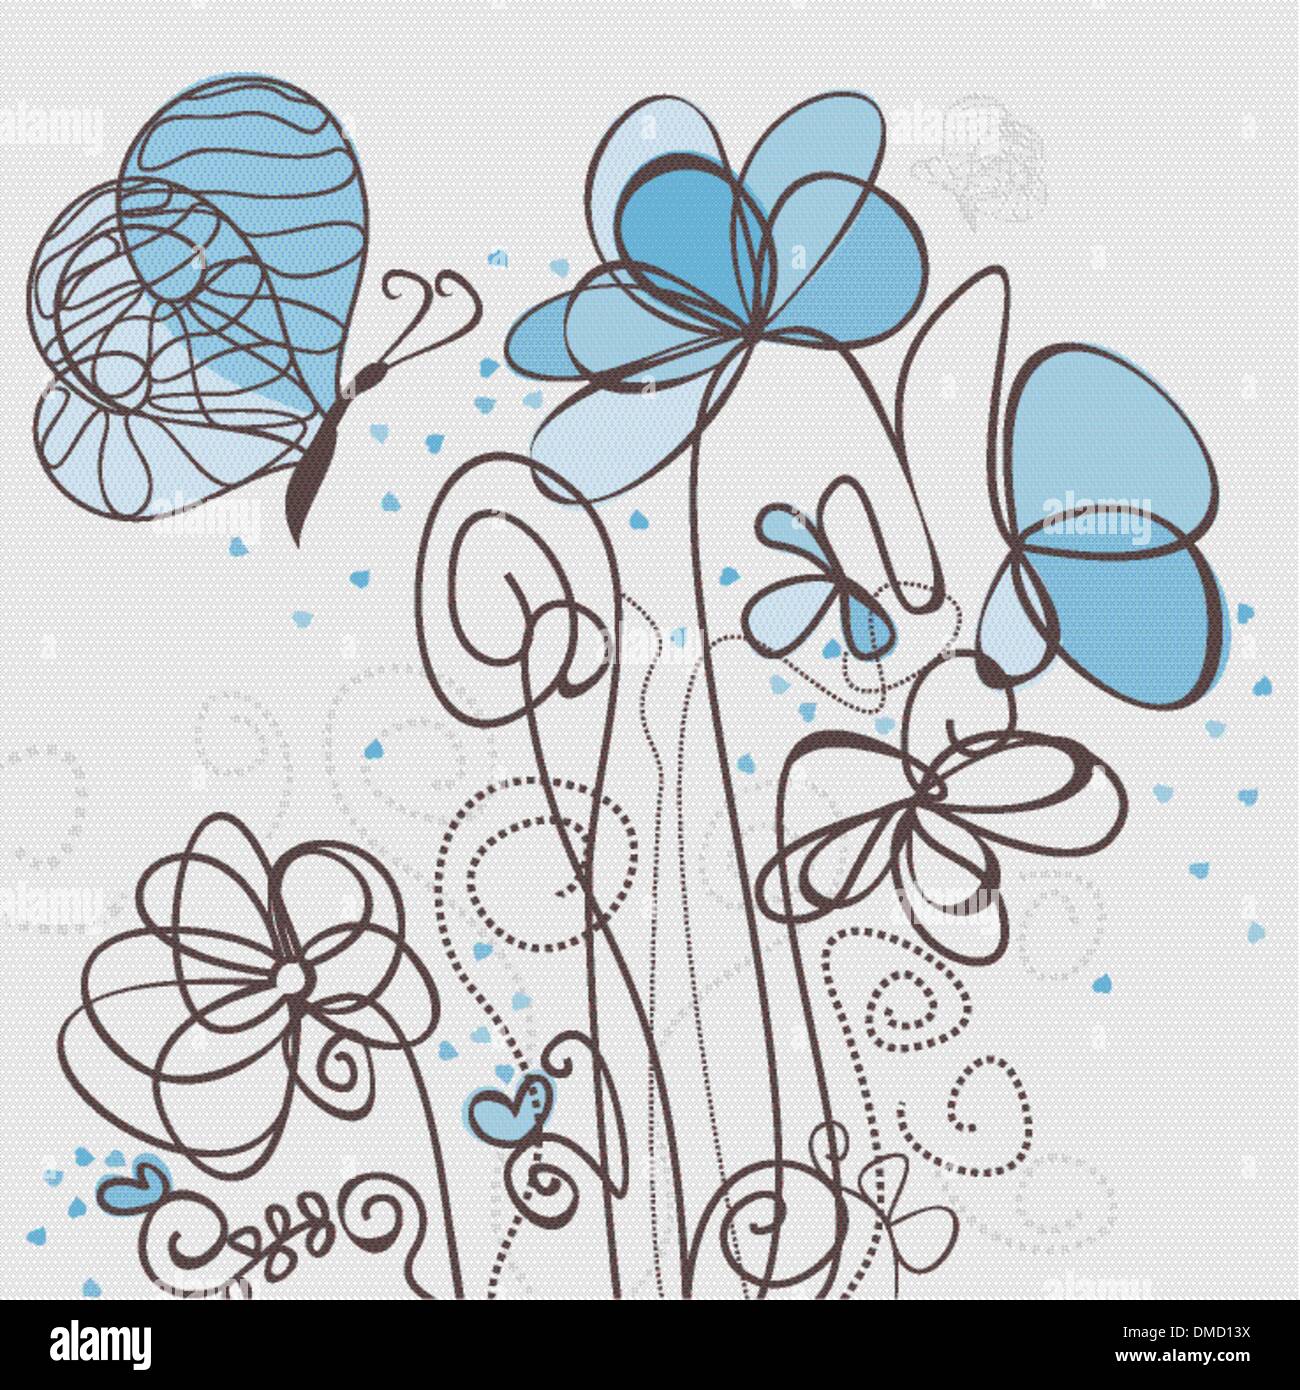 Blue flower Stock Vector Image & Art - Alamy